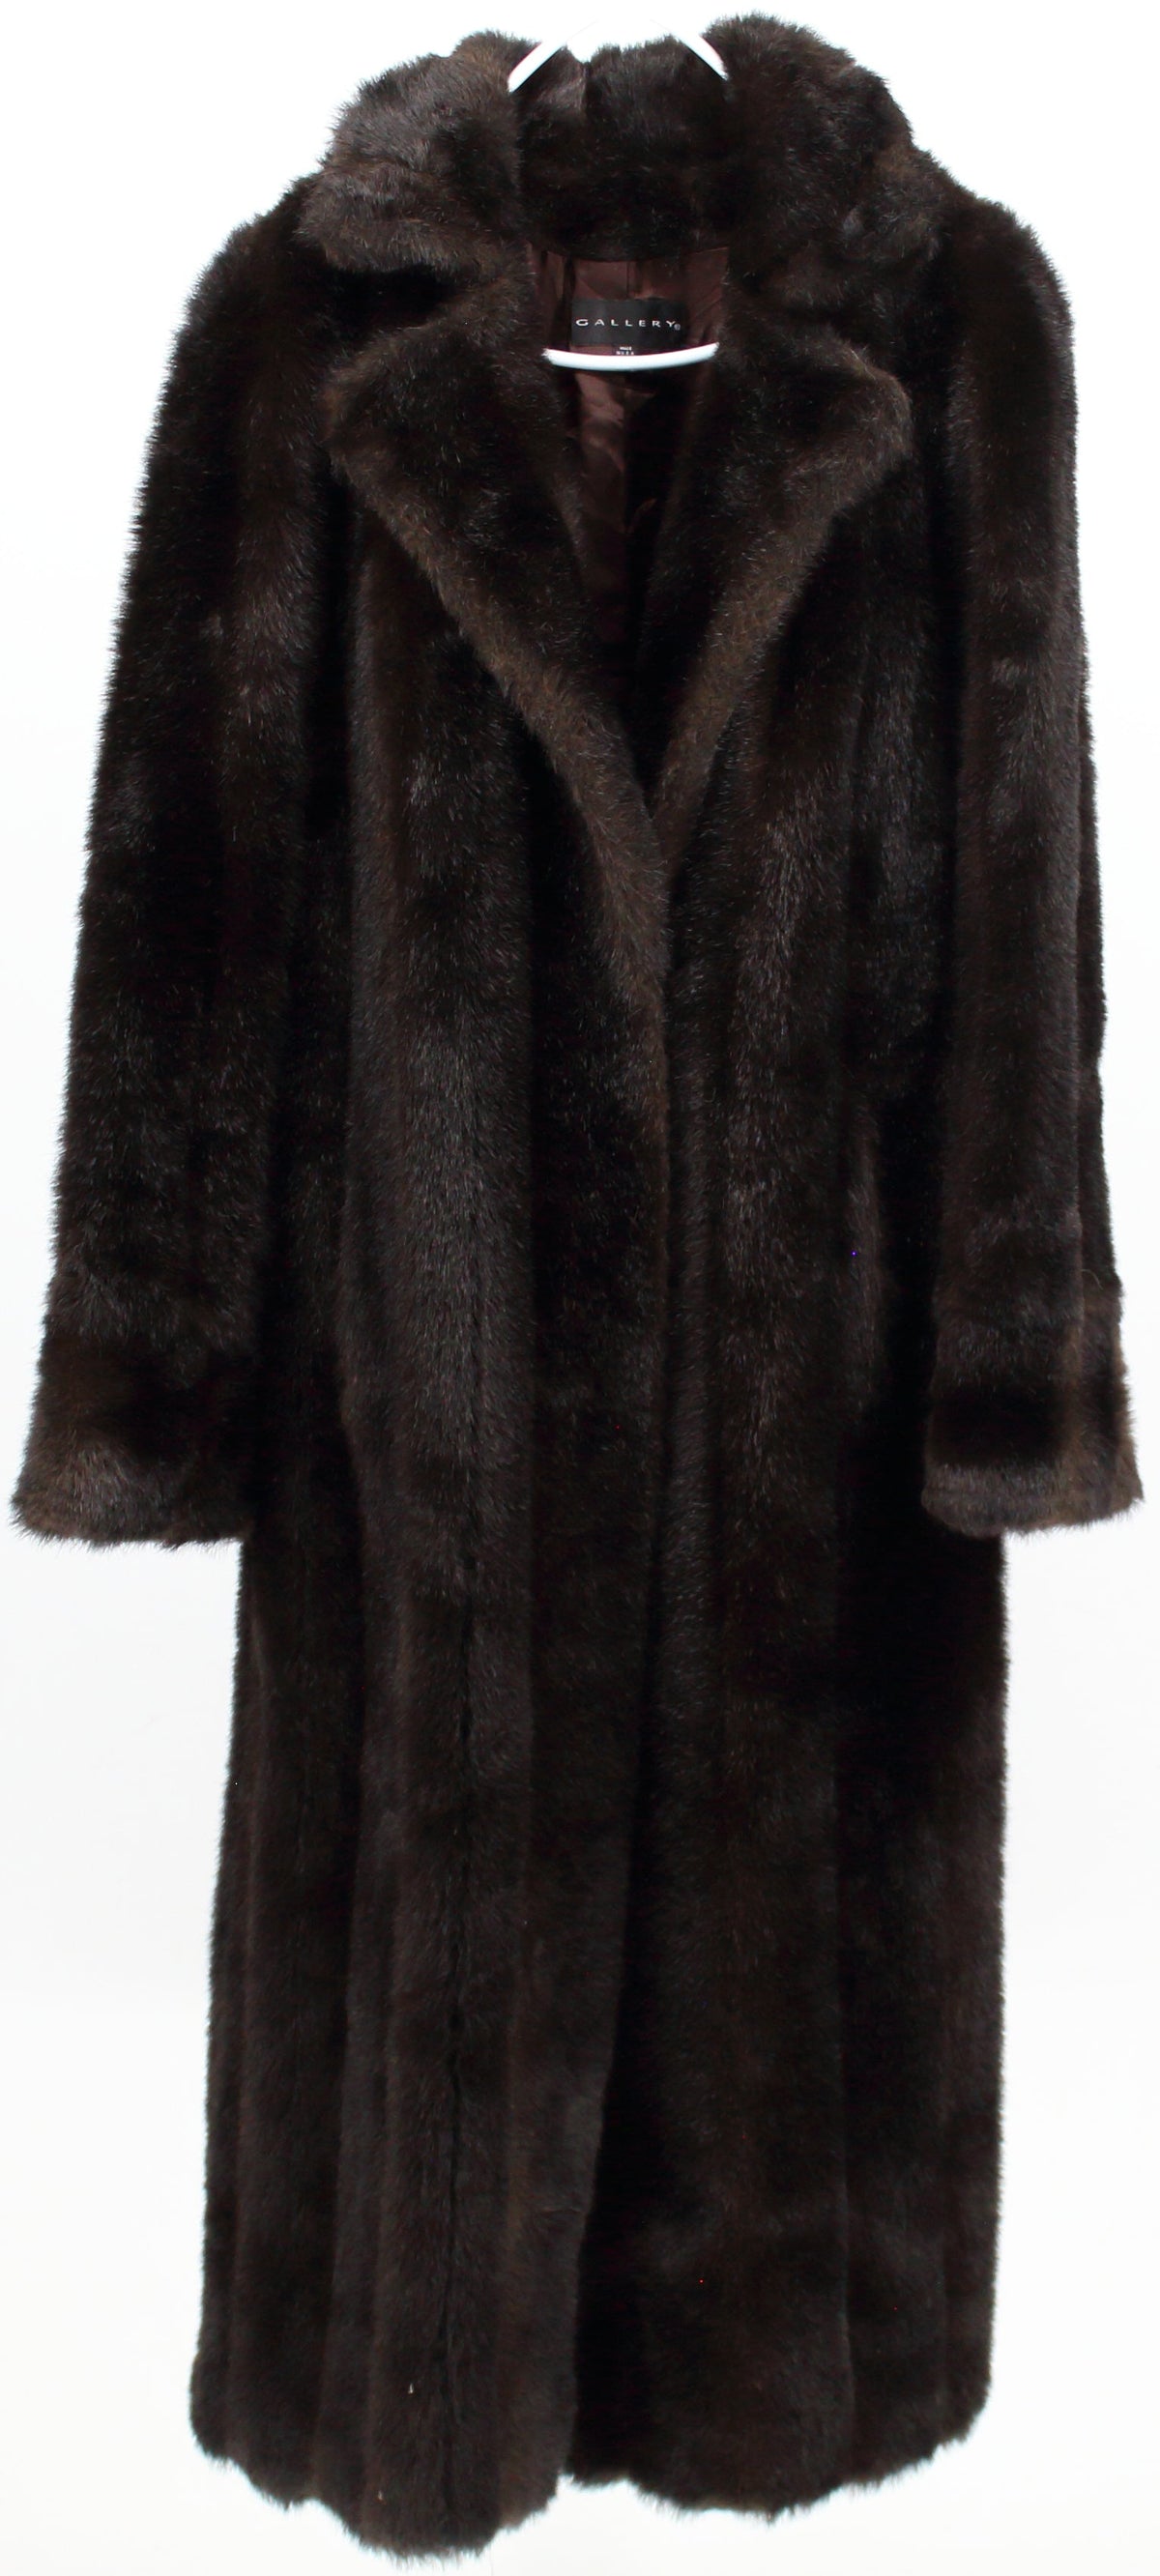 Gallery Long Dark Brown Faux Fur Coat